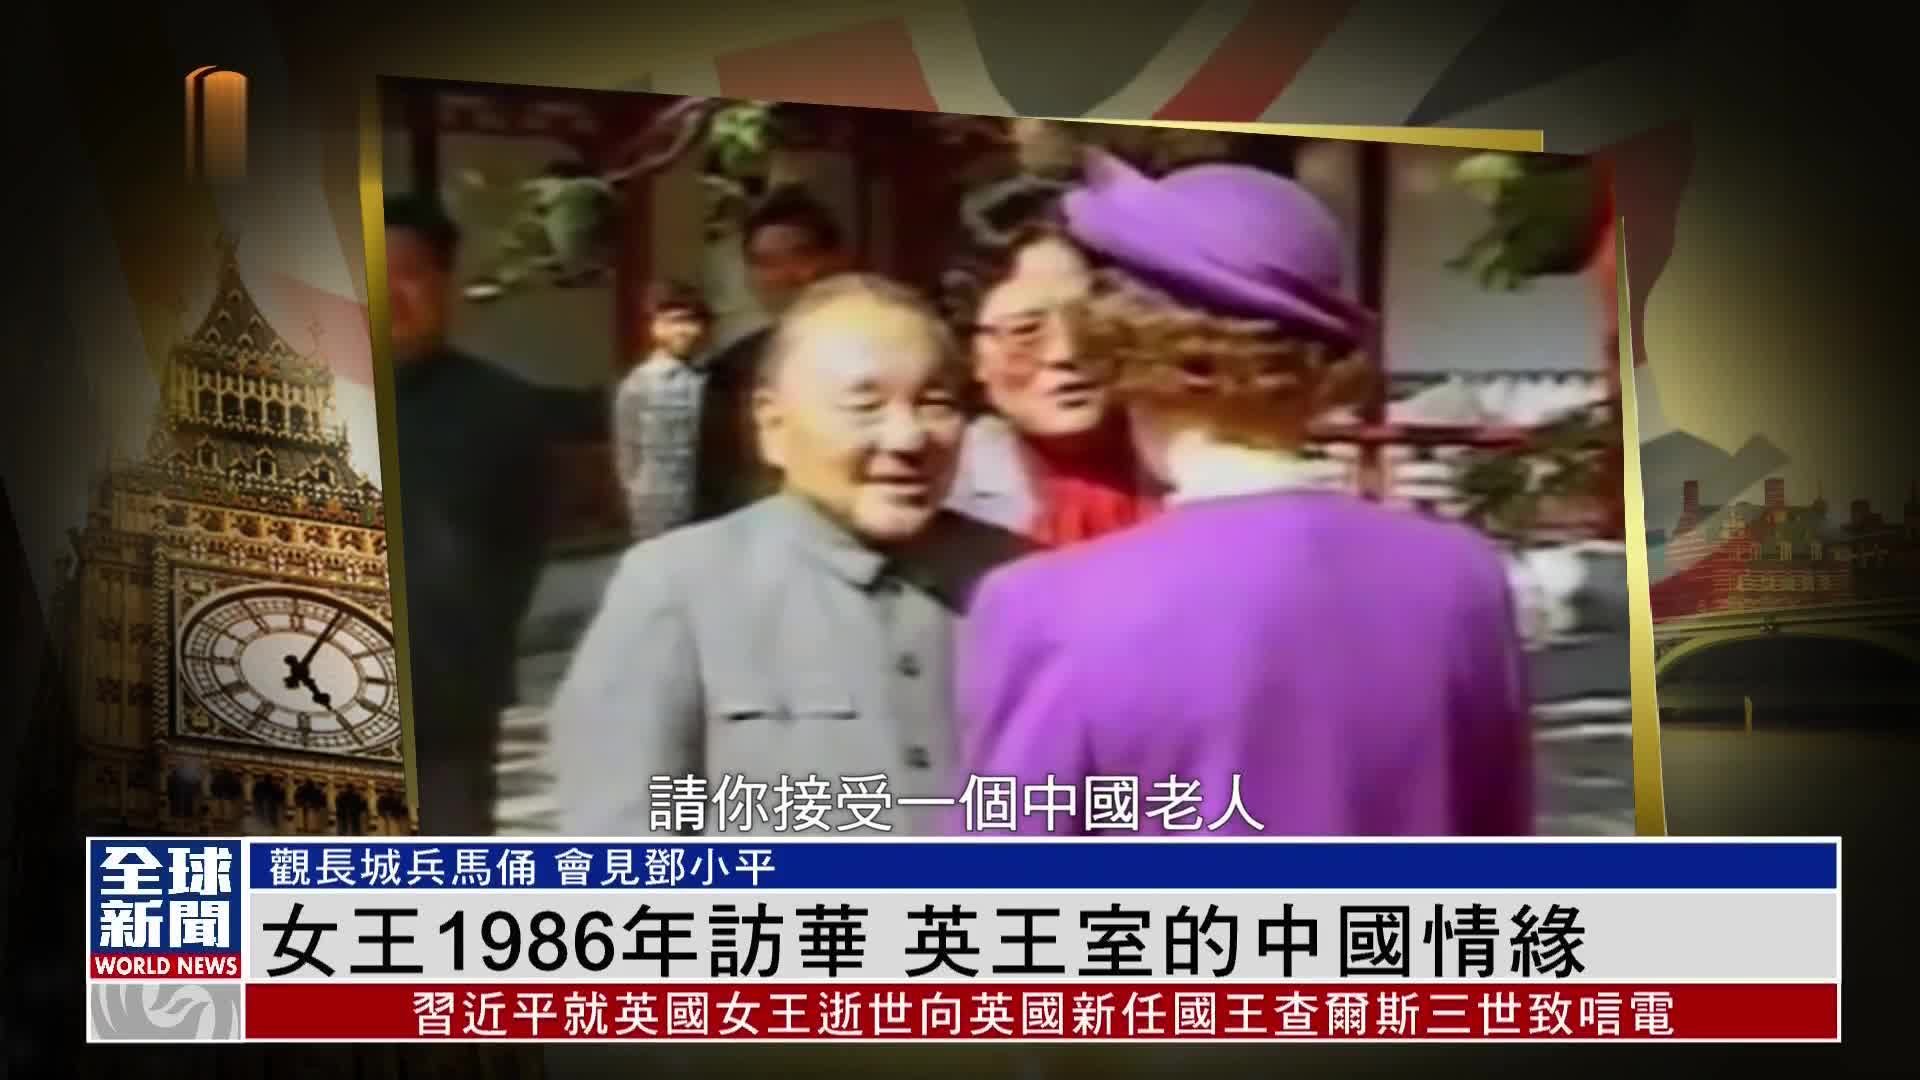 粤语报道｜新闻背景：伊丽莎白二世1986年访华 英王室的中国情缘